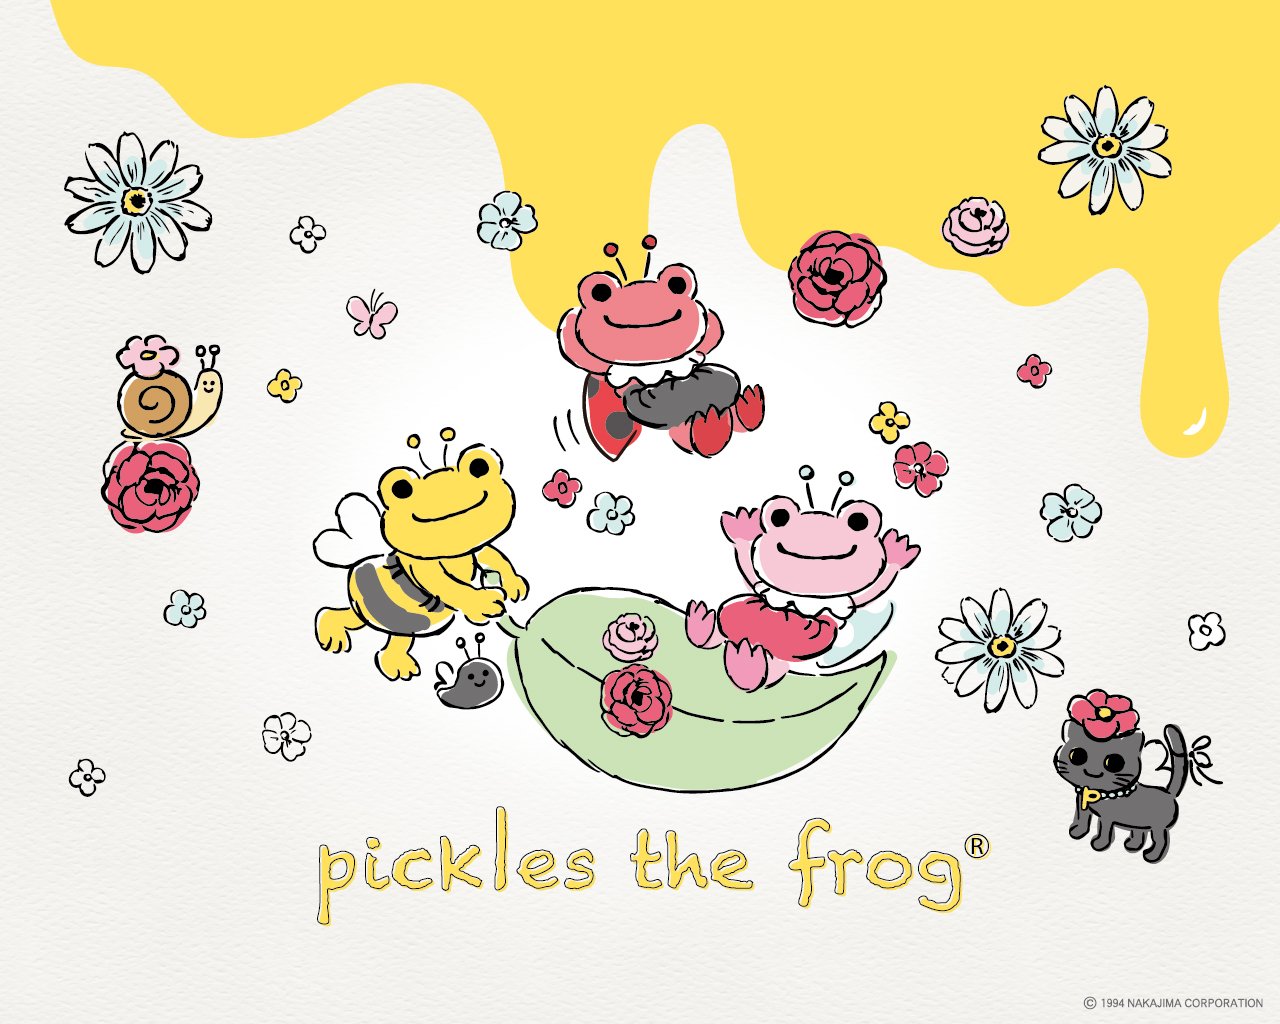 Pickles The Frog News かえるのピクルスnews Hpダウンロード更新しました かえるのピクルス Picklesthefrog 3月 春 3月の壁紙は春の虫に変身したピクルスたちのイラストです ブックカバー カレンダー スマートフォン用壁紙もありますので